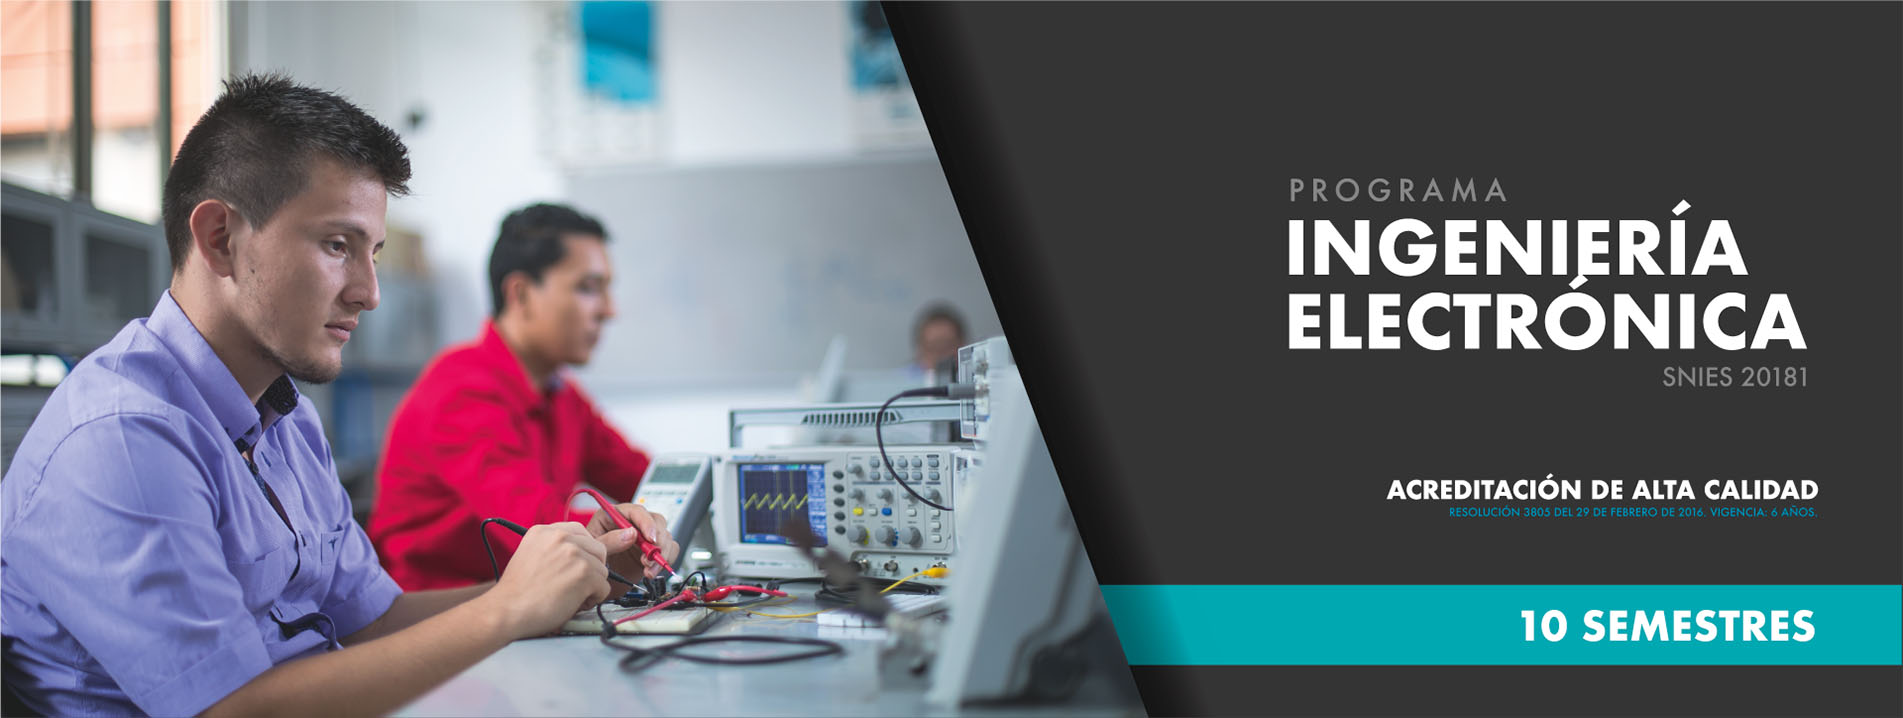 Imagen de cabecera para el Programa de Ingeniería Electrónica de Universidad de Ibagué